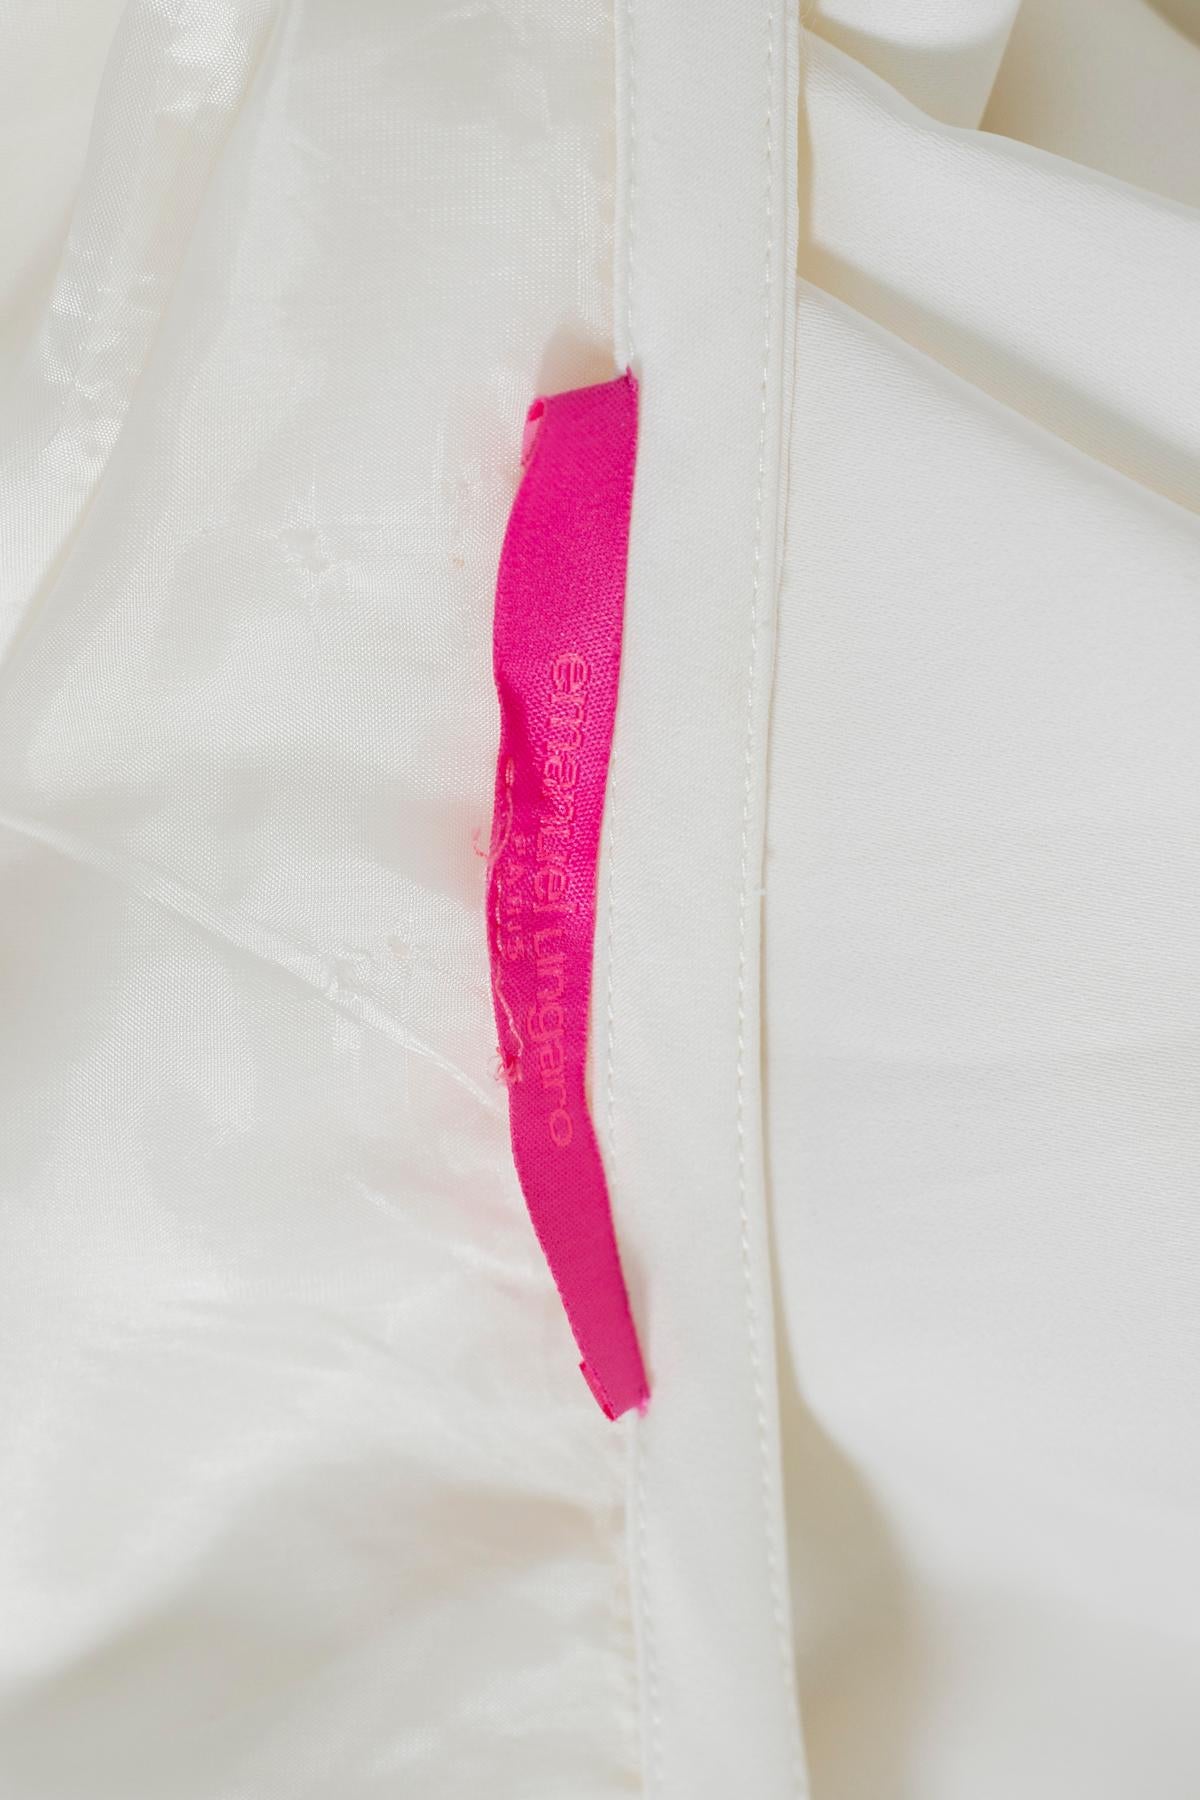 Jolie jupe en satin de soie blanche d'Emanuel Ungaro des années 1990, fabriquée à Paris. LE LABEL ORIGINAL.
La jupe est entièrement réalisée en satin de soie blanc neige, avec une coupe très douce. La jupe tire ses rangs d'une bande située au niveau